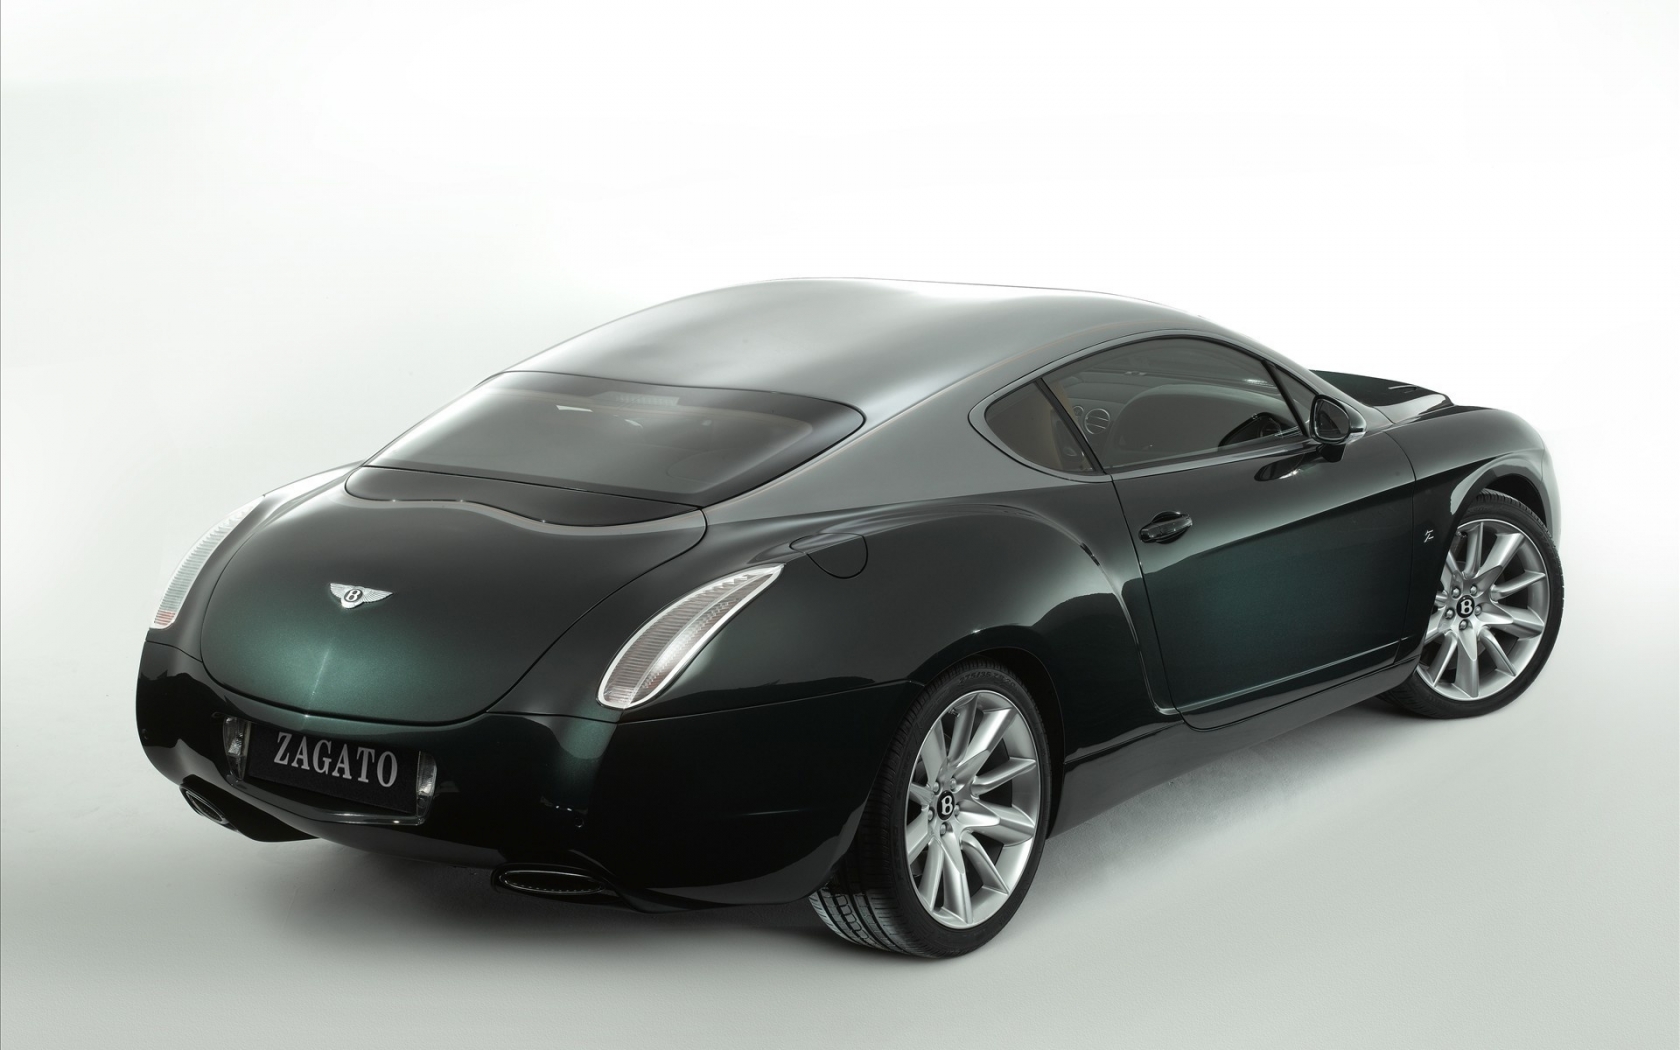 Bentley Zagato Rear for 1680 x 1050 widescreen resolution